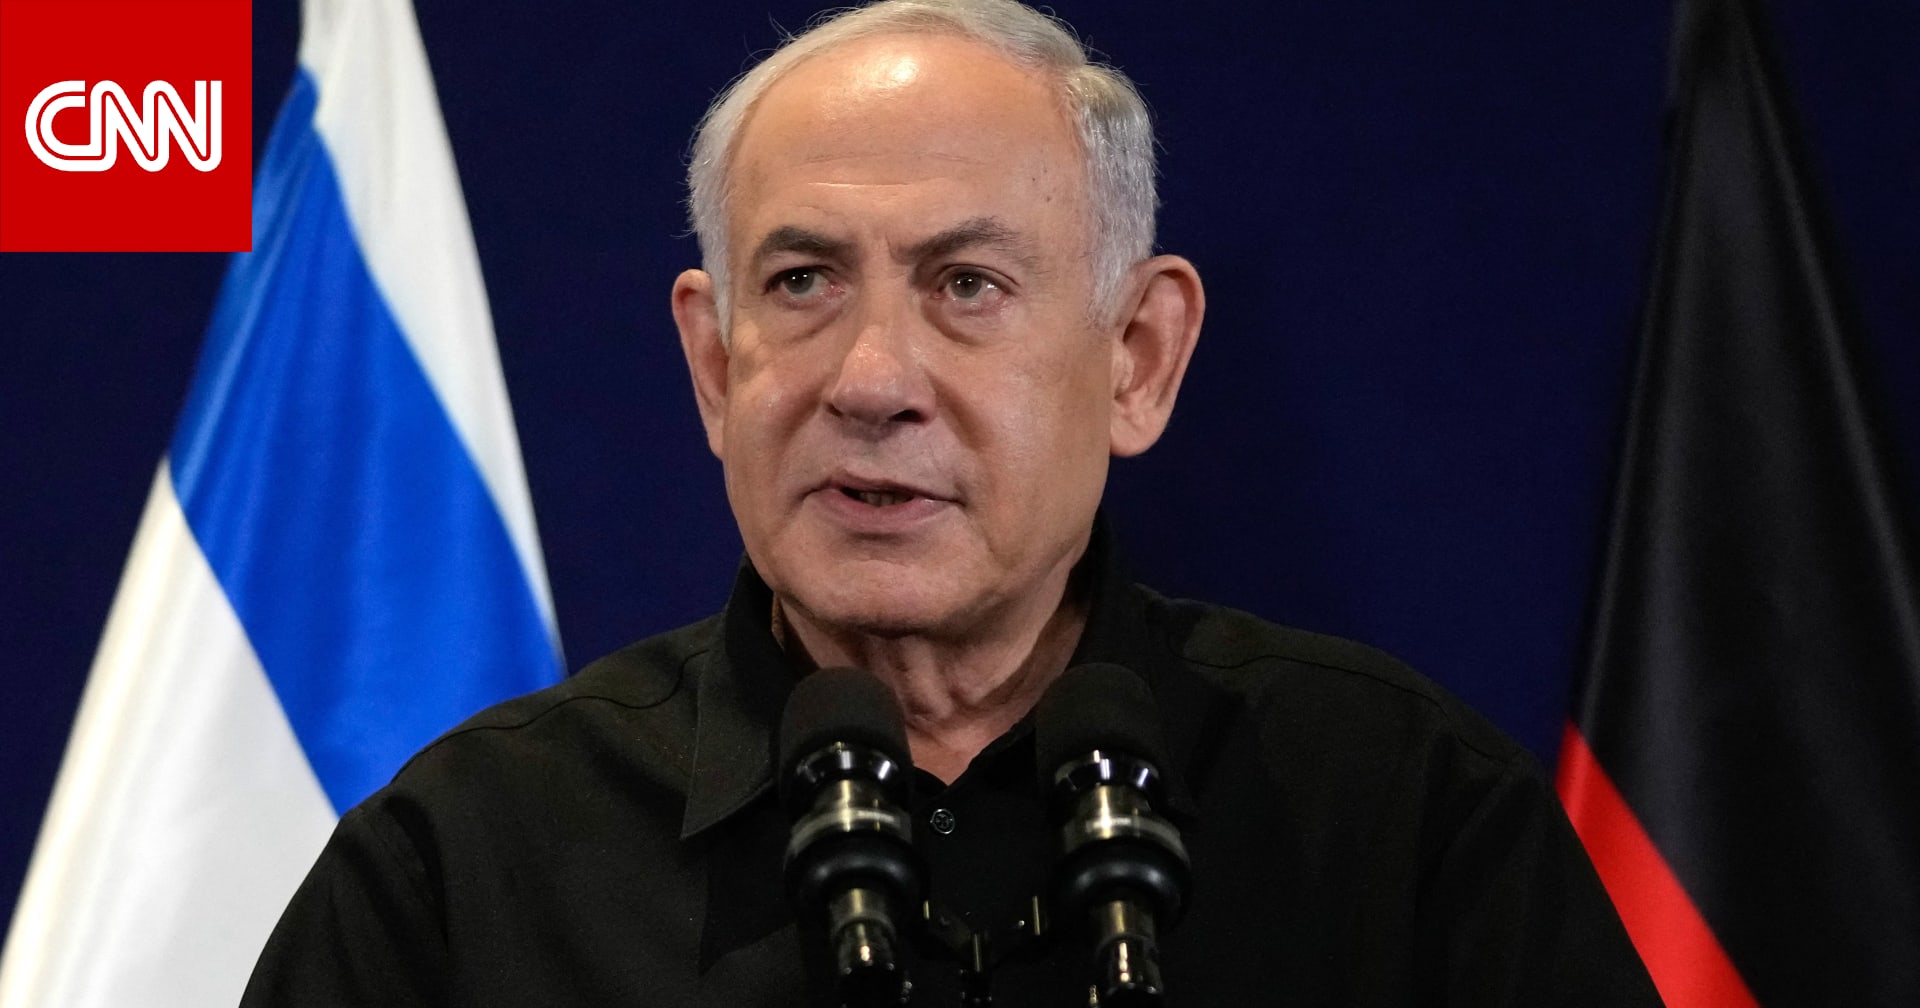 نتنياهو: إسرائيل ستتولى "المسؤولية الأمنية الشاملة" في غزة لفترة "غير محددة" بعد الحرب